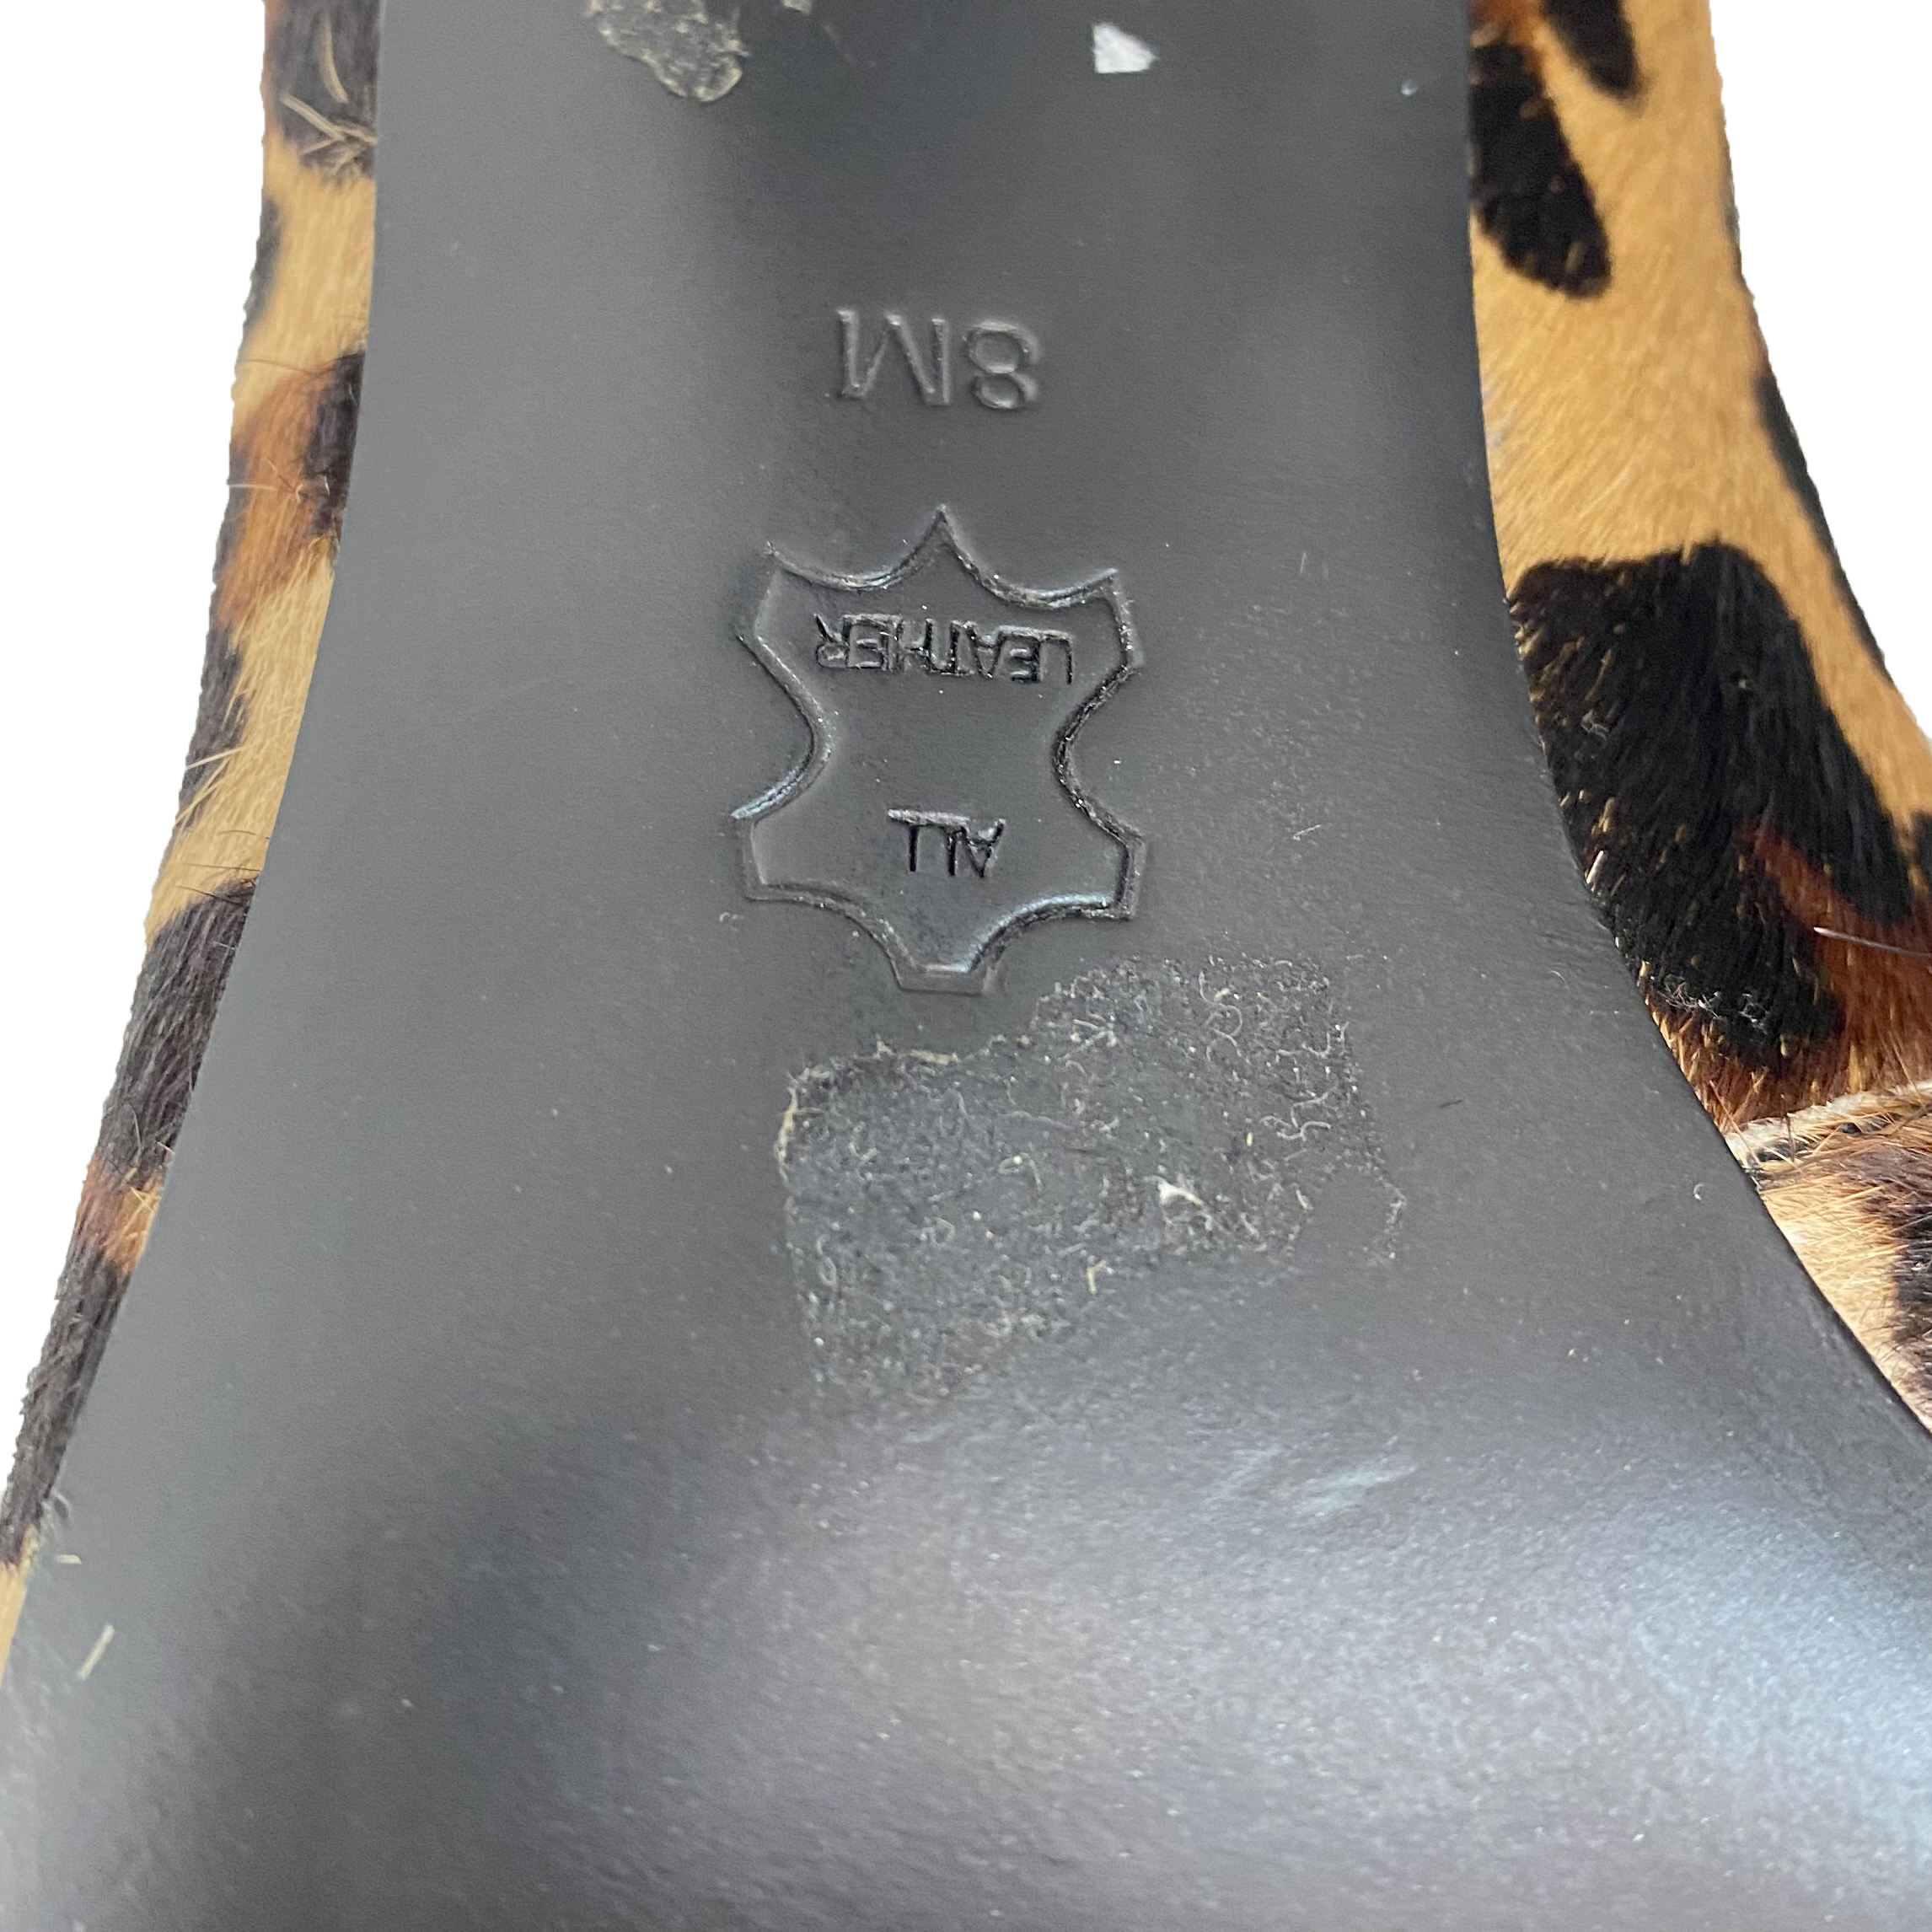 Tory Burch Leopard-print Calf-Skin Stiletto Pumps